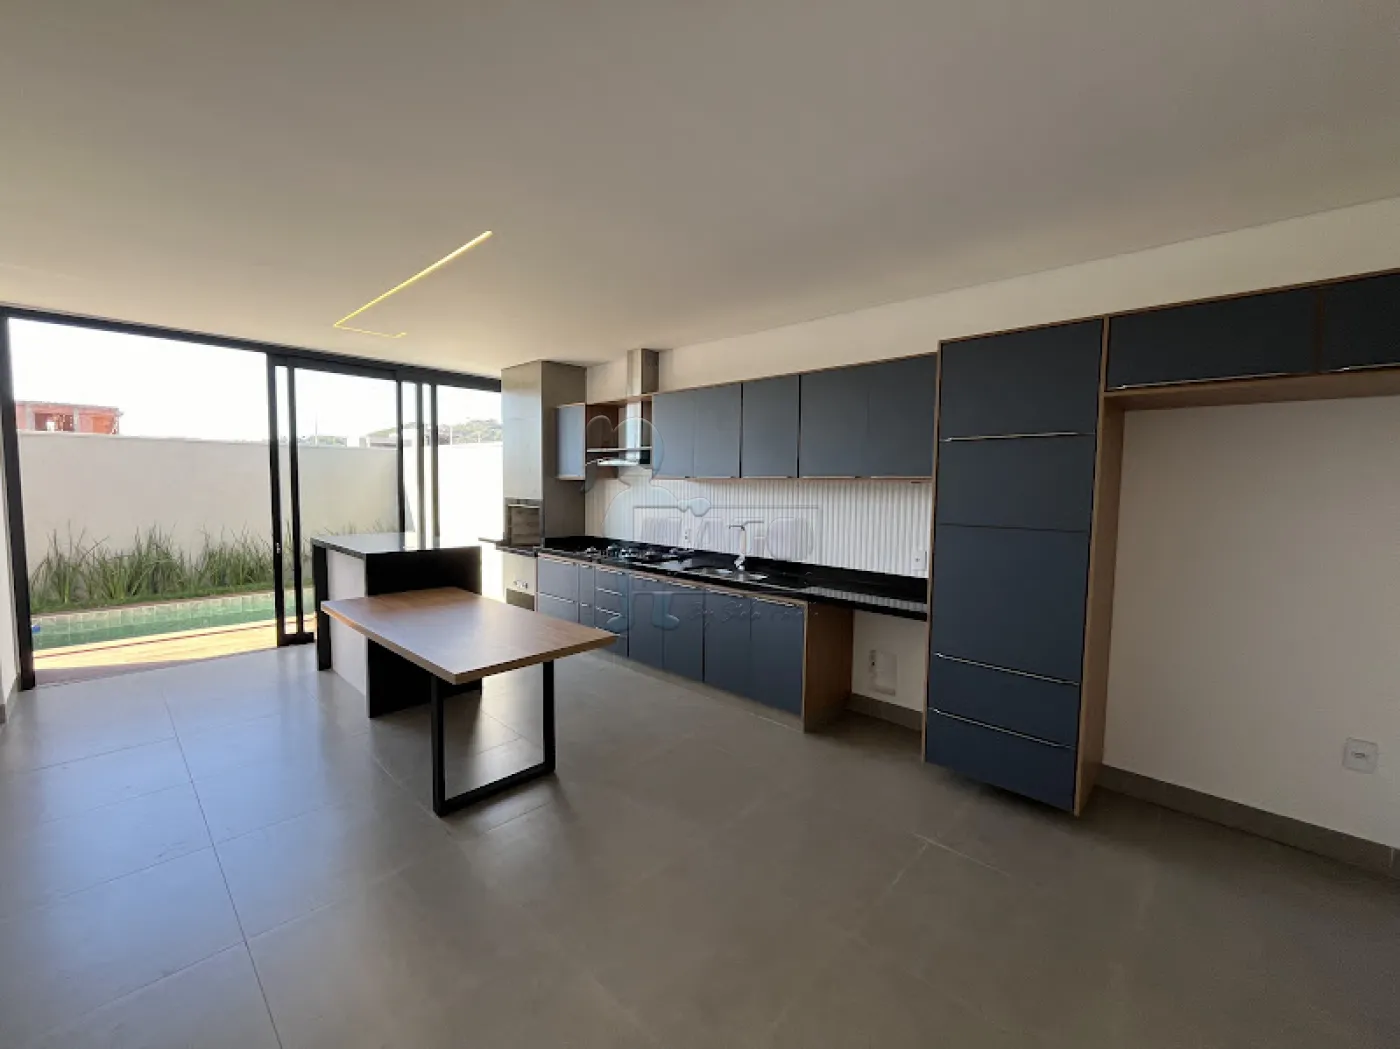 Comprar Casa condomínio / Padrão em Ribeirão Preto R$ 1.140.000,00 - Foto 2